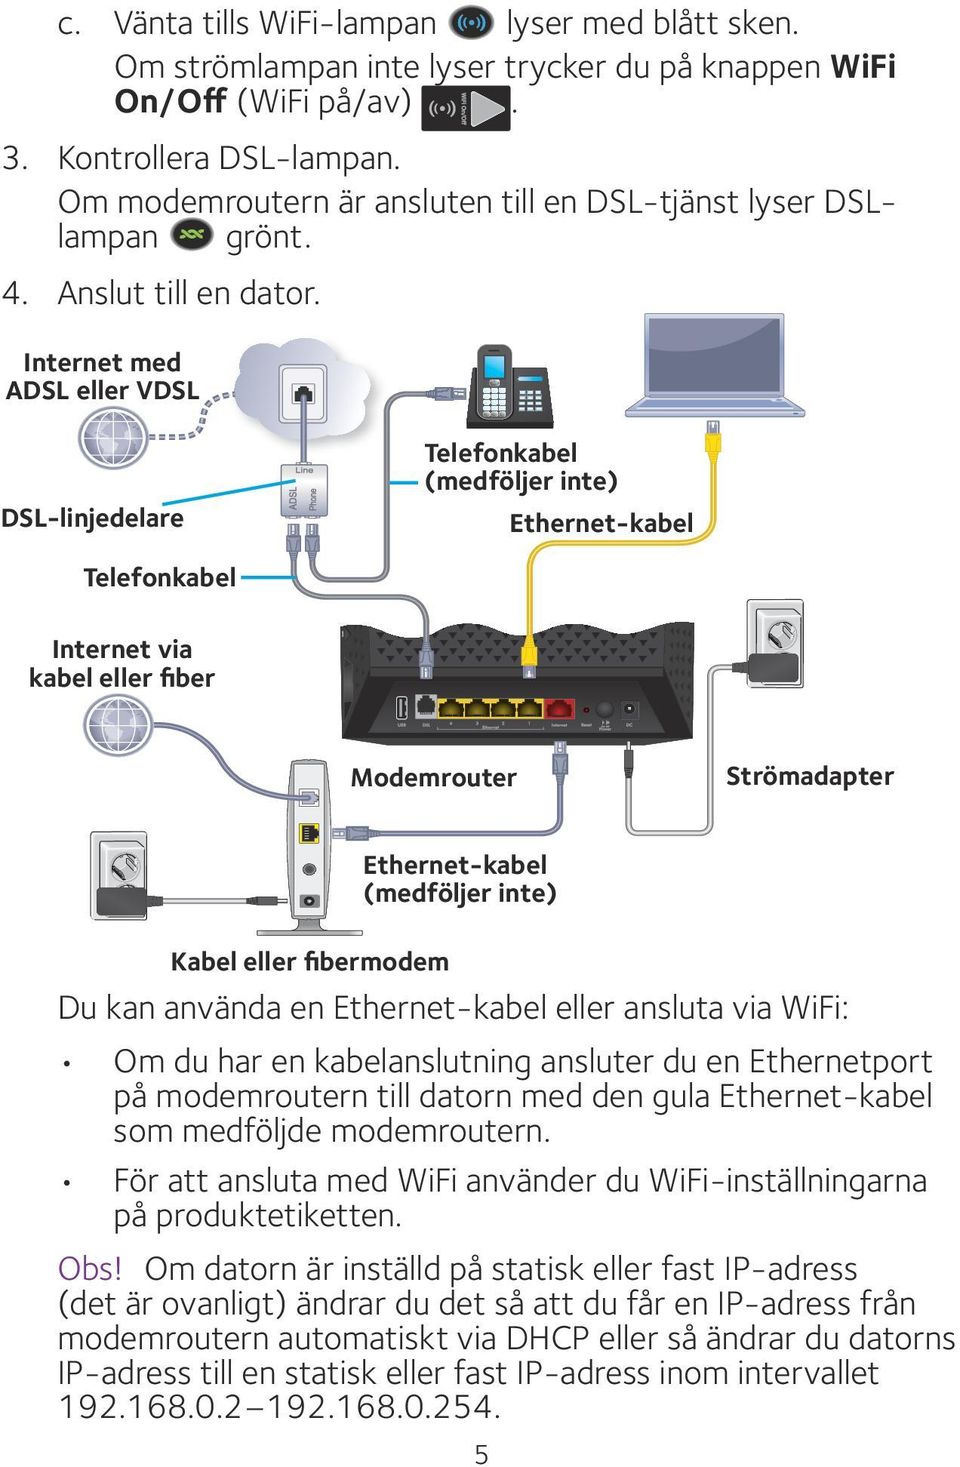 Internet med ADSL eller VDSL DSL-linjedelare Telefonkabel (medföljer inte) Ethernet-kabel Telefonkabel Internet via kabel eller fiber Modemrouter Strömadapter Kabel eller fibermodem Ethernet-kabel